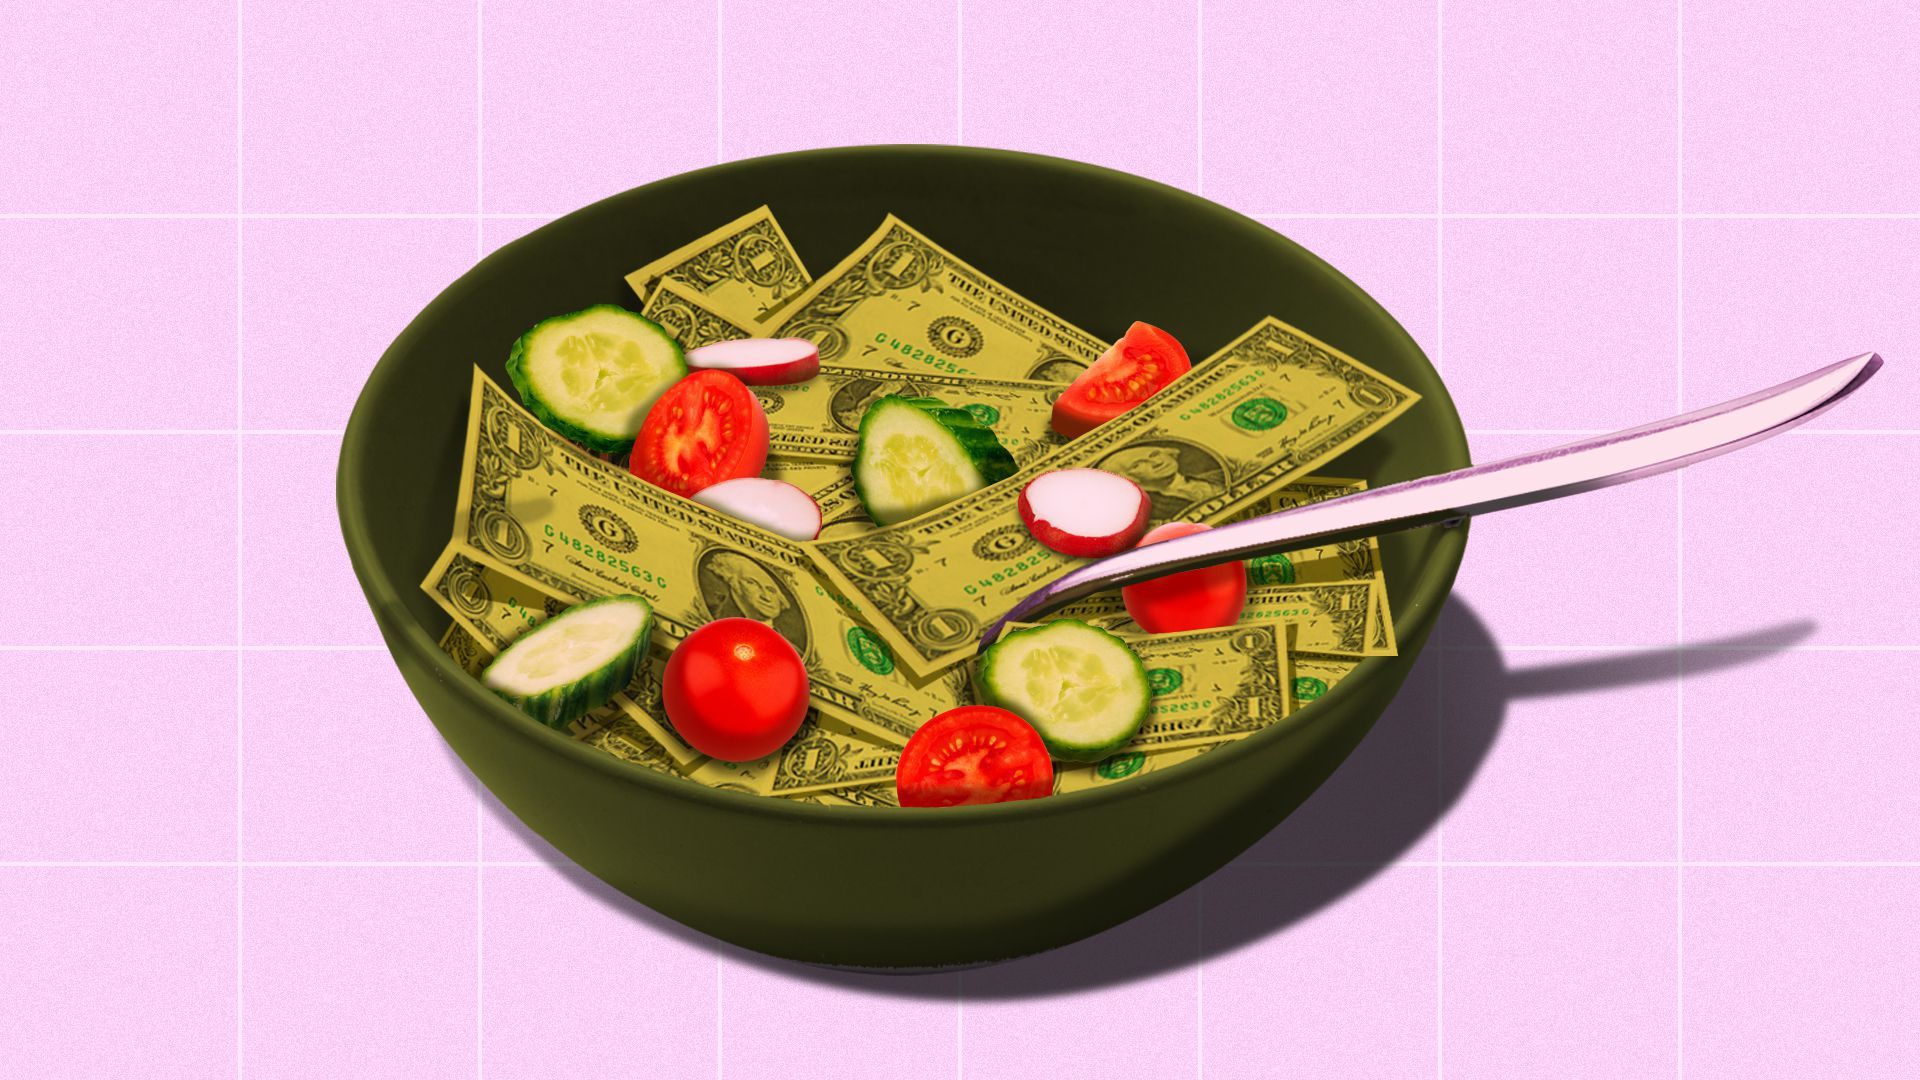 Illustration of a salad made up of dollar bills.